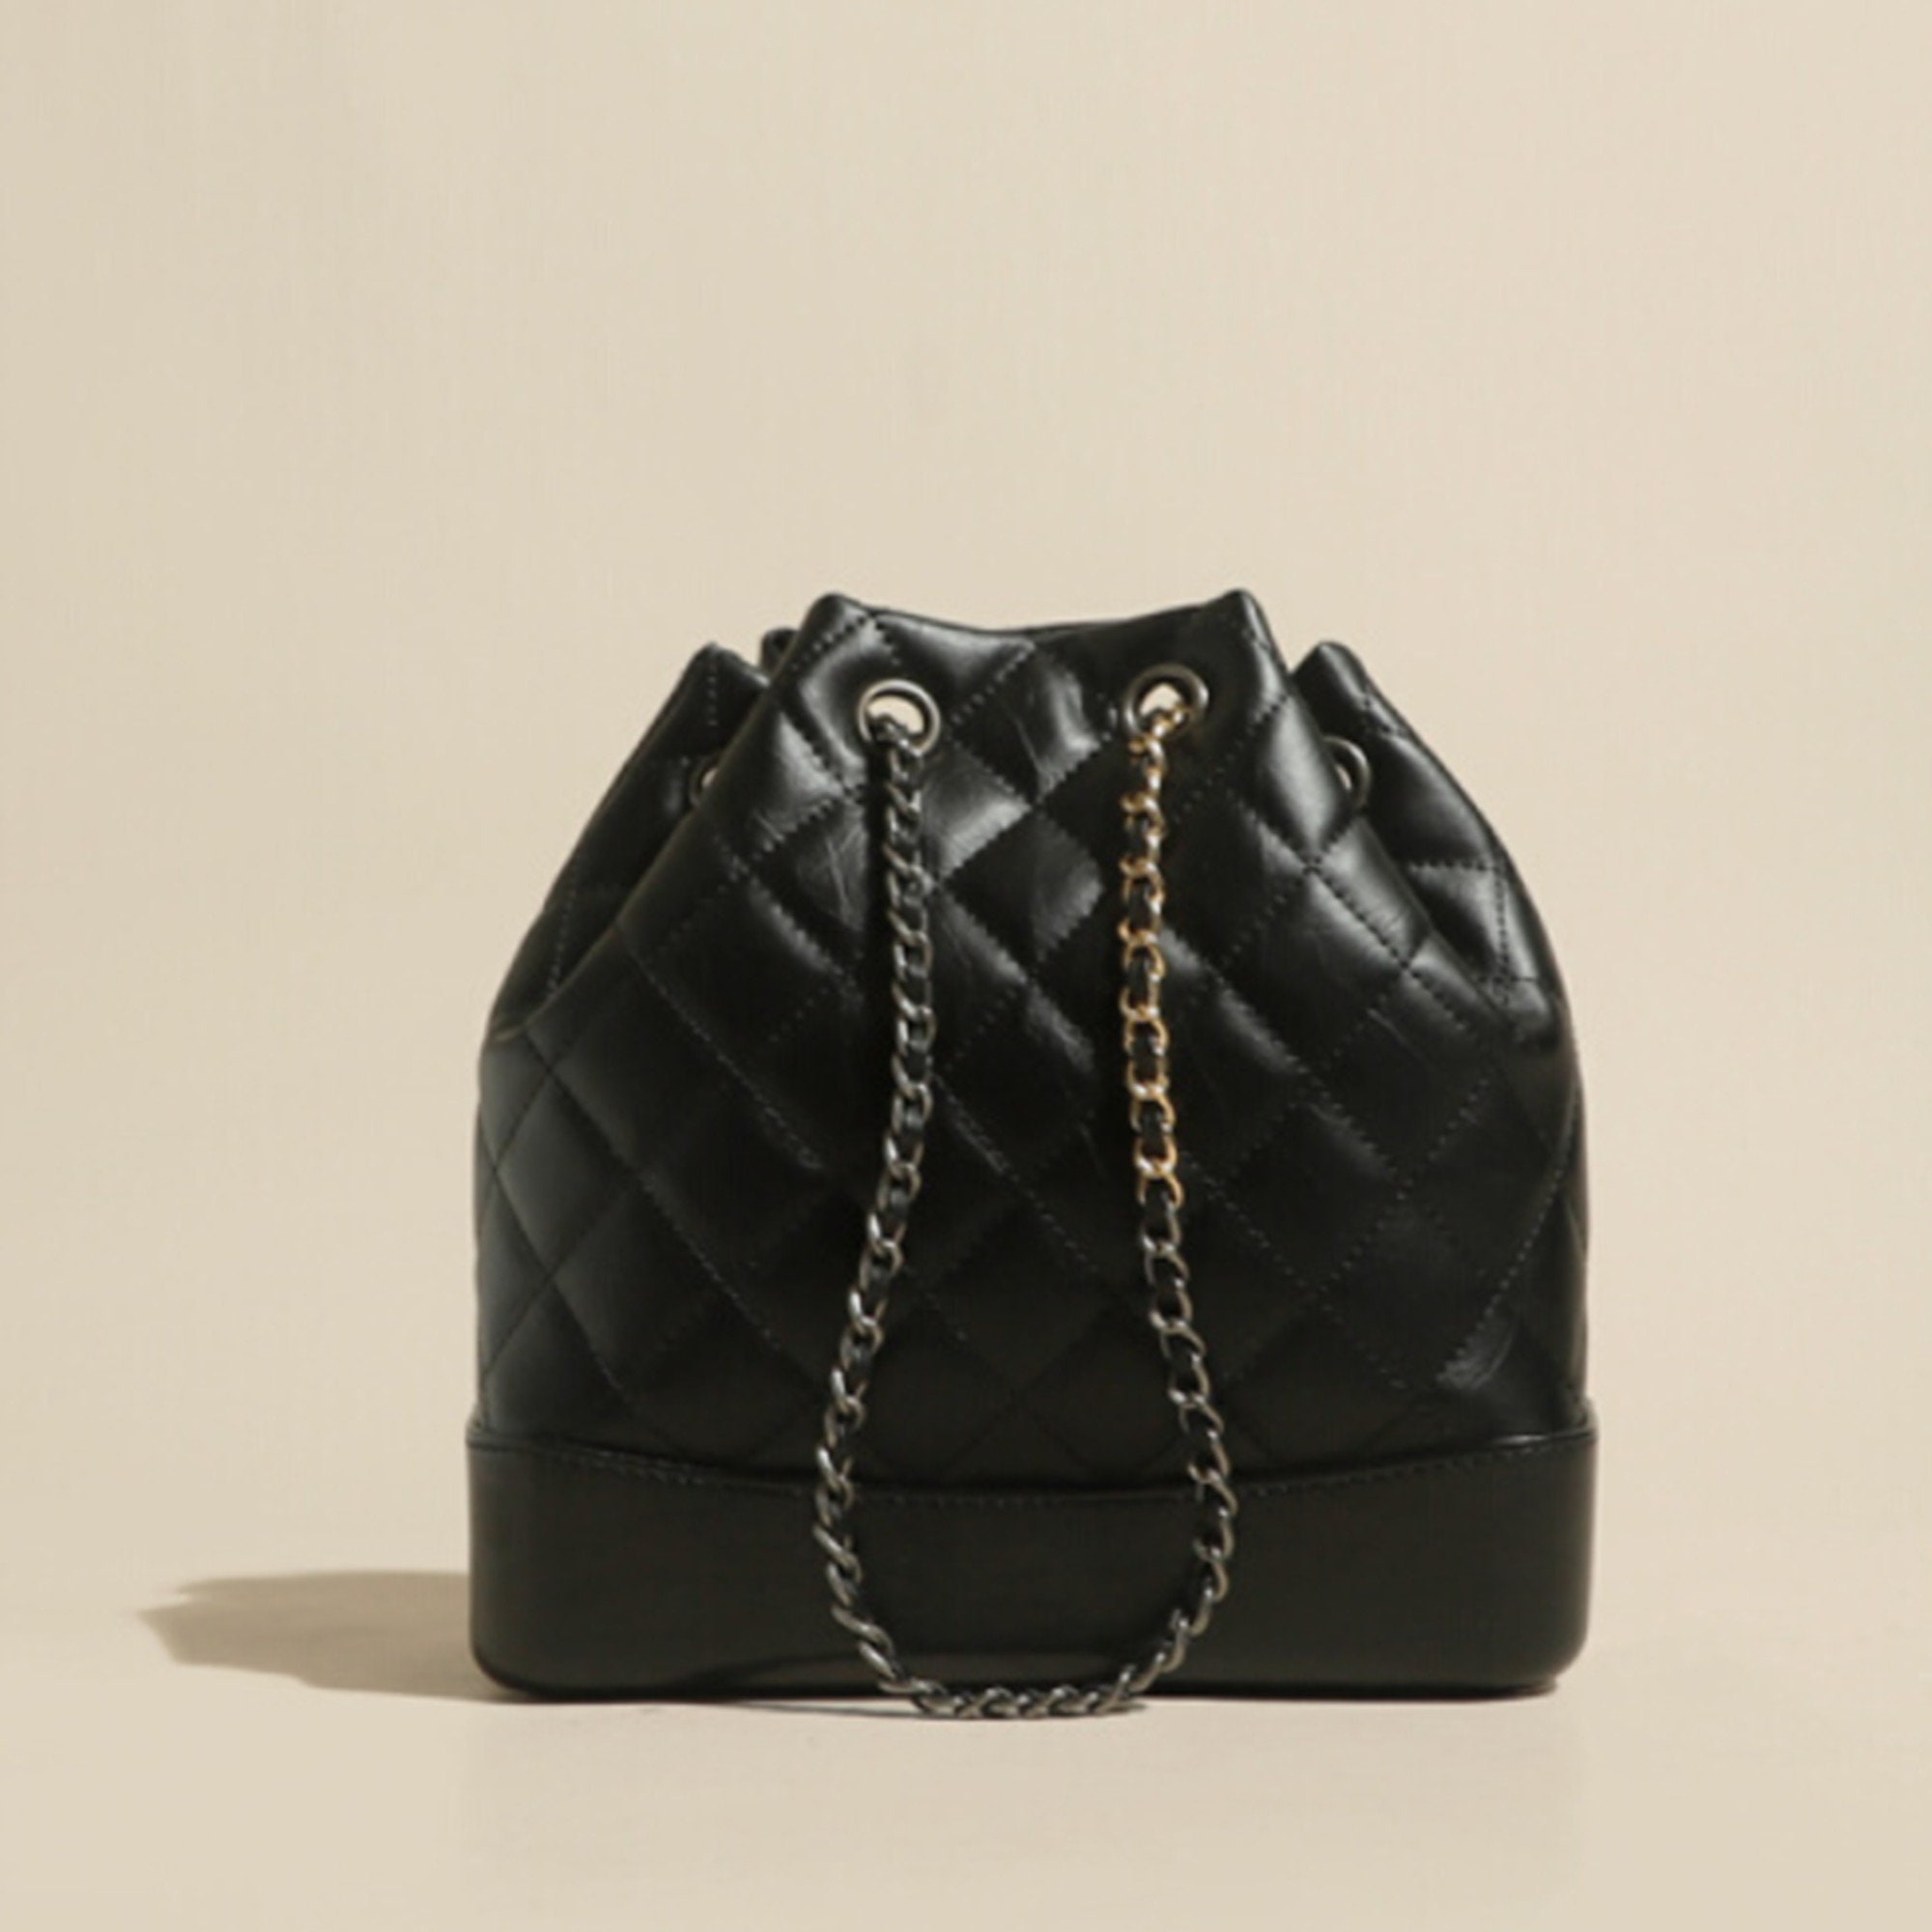 Buy Chanel Bucket Bag Online In India -  India